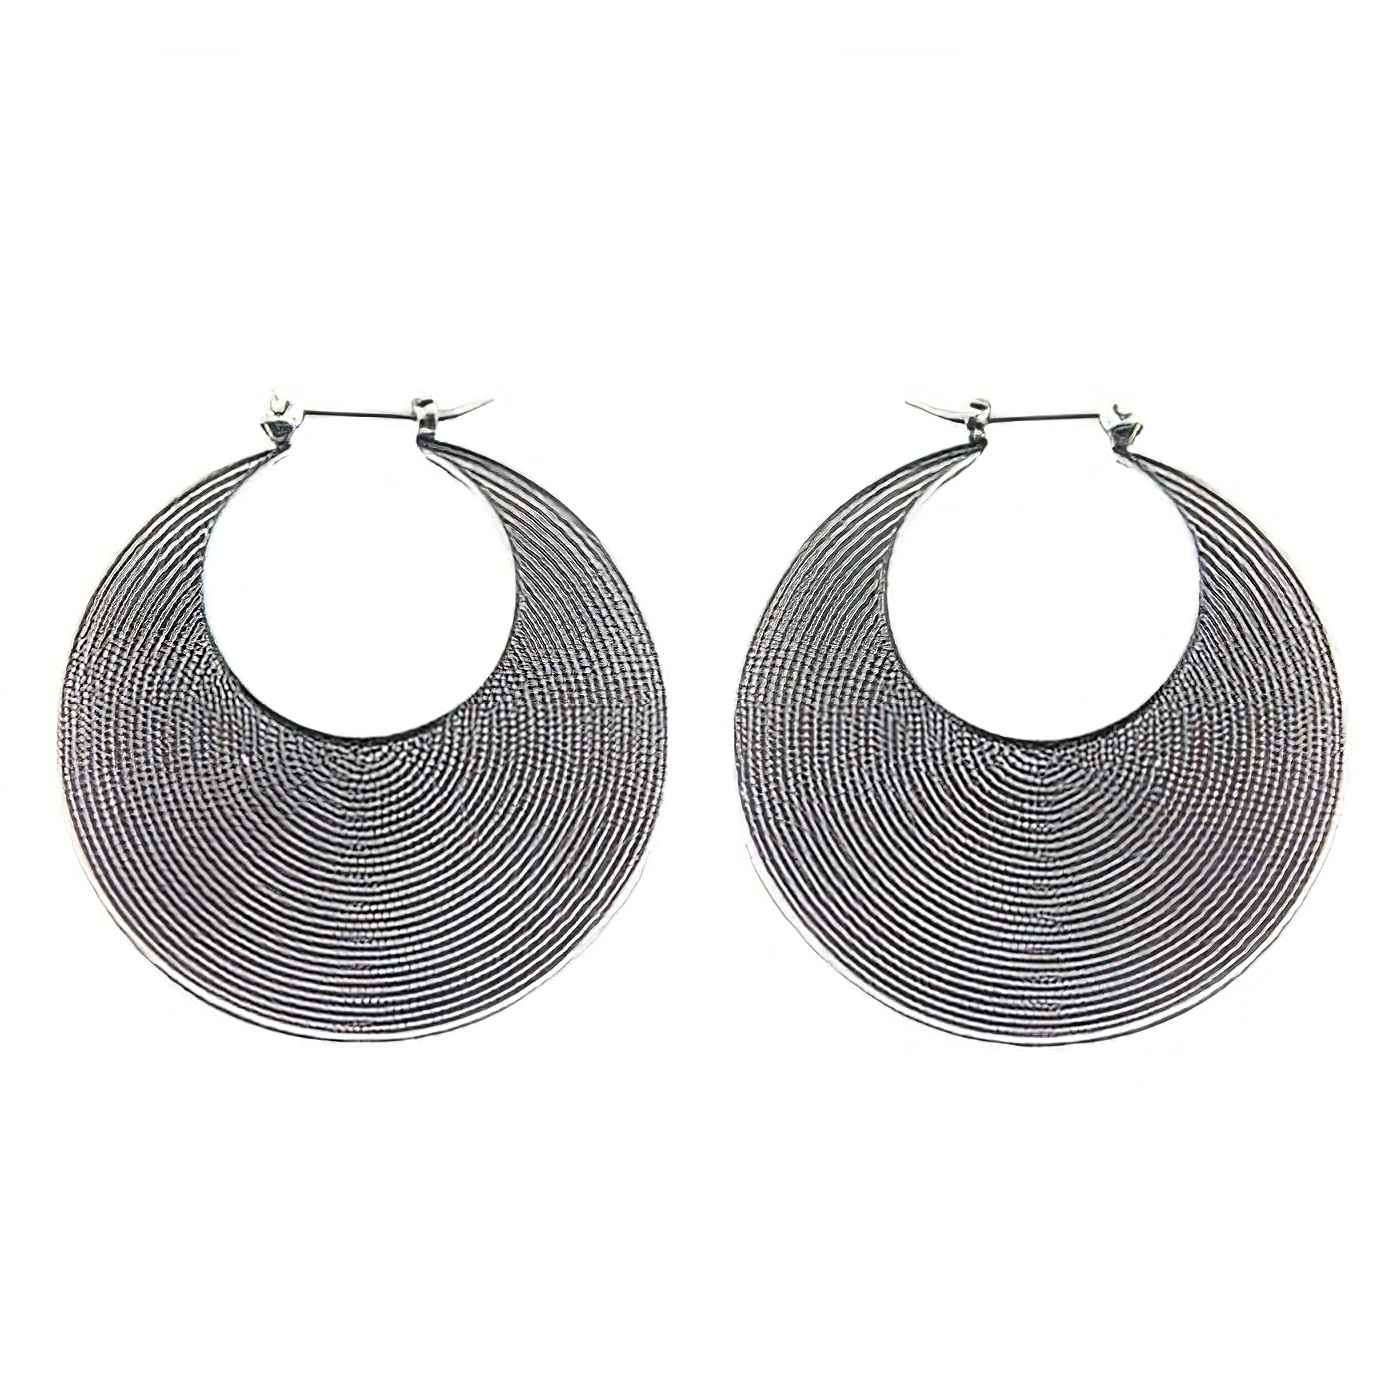 Artisanry wirework silver earrings 